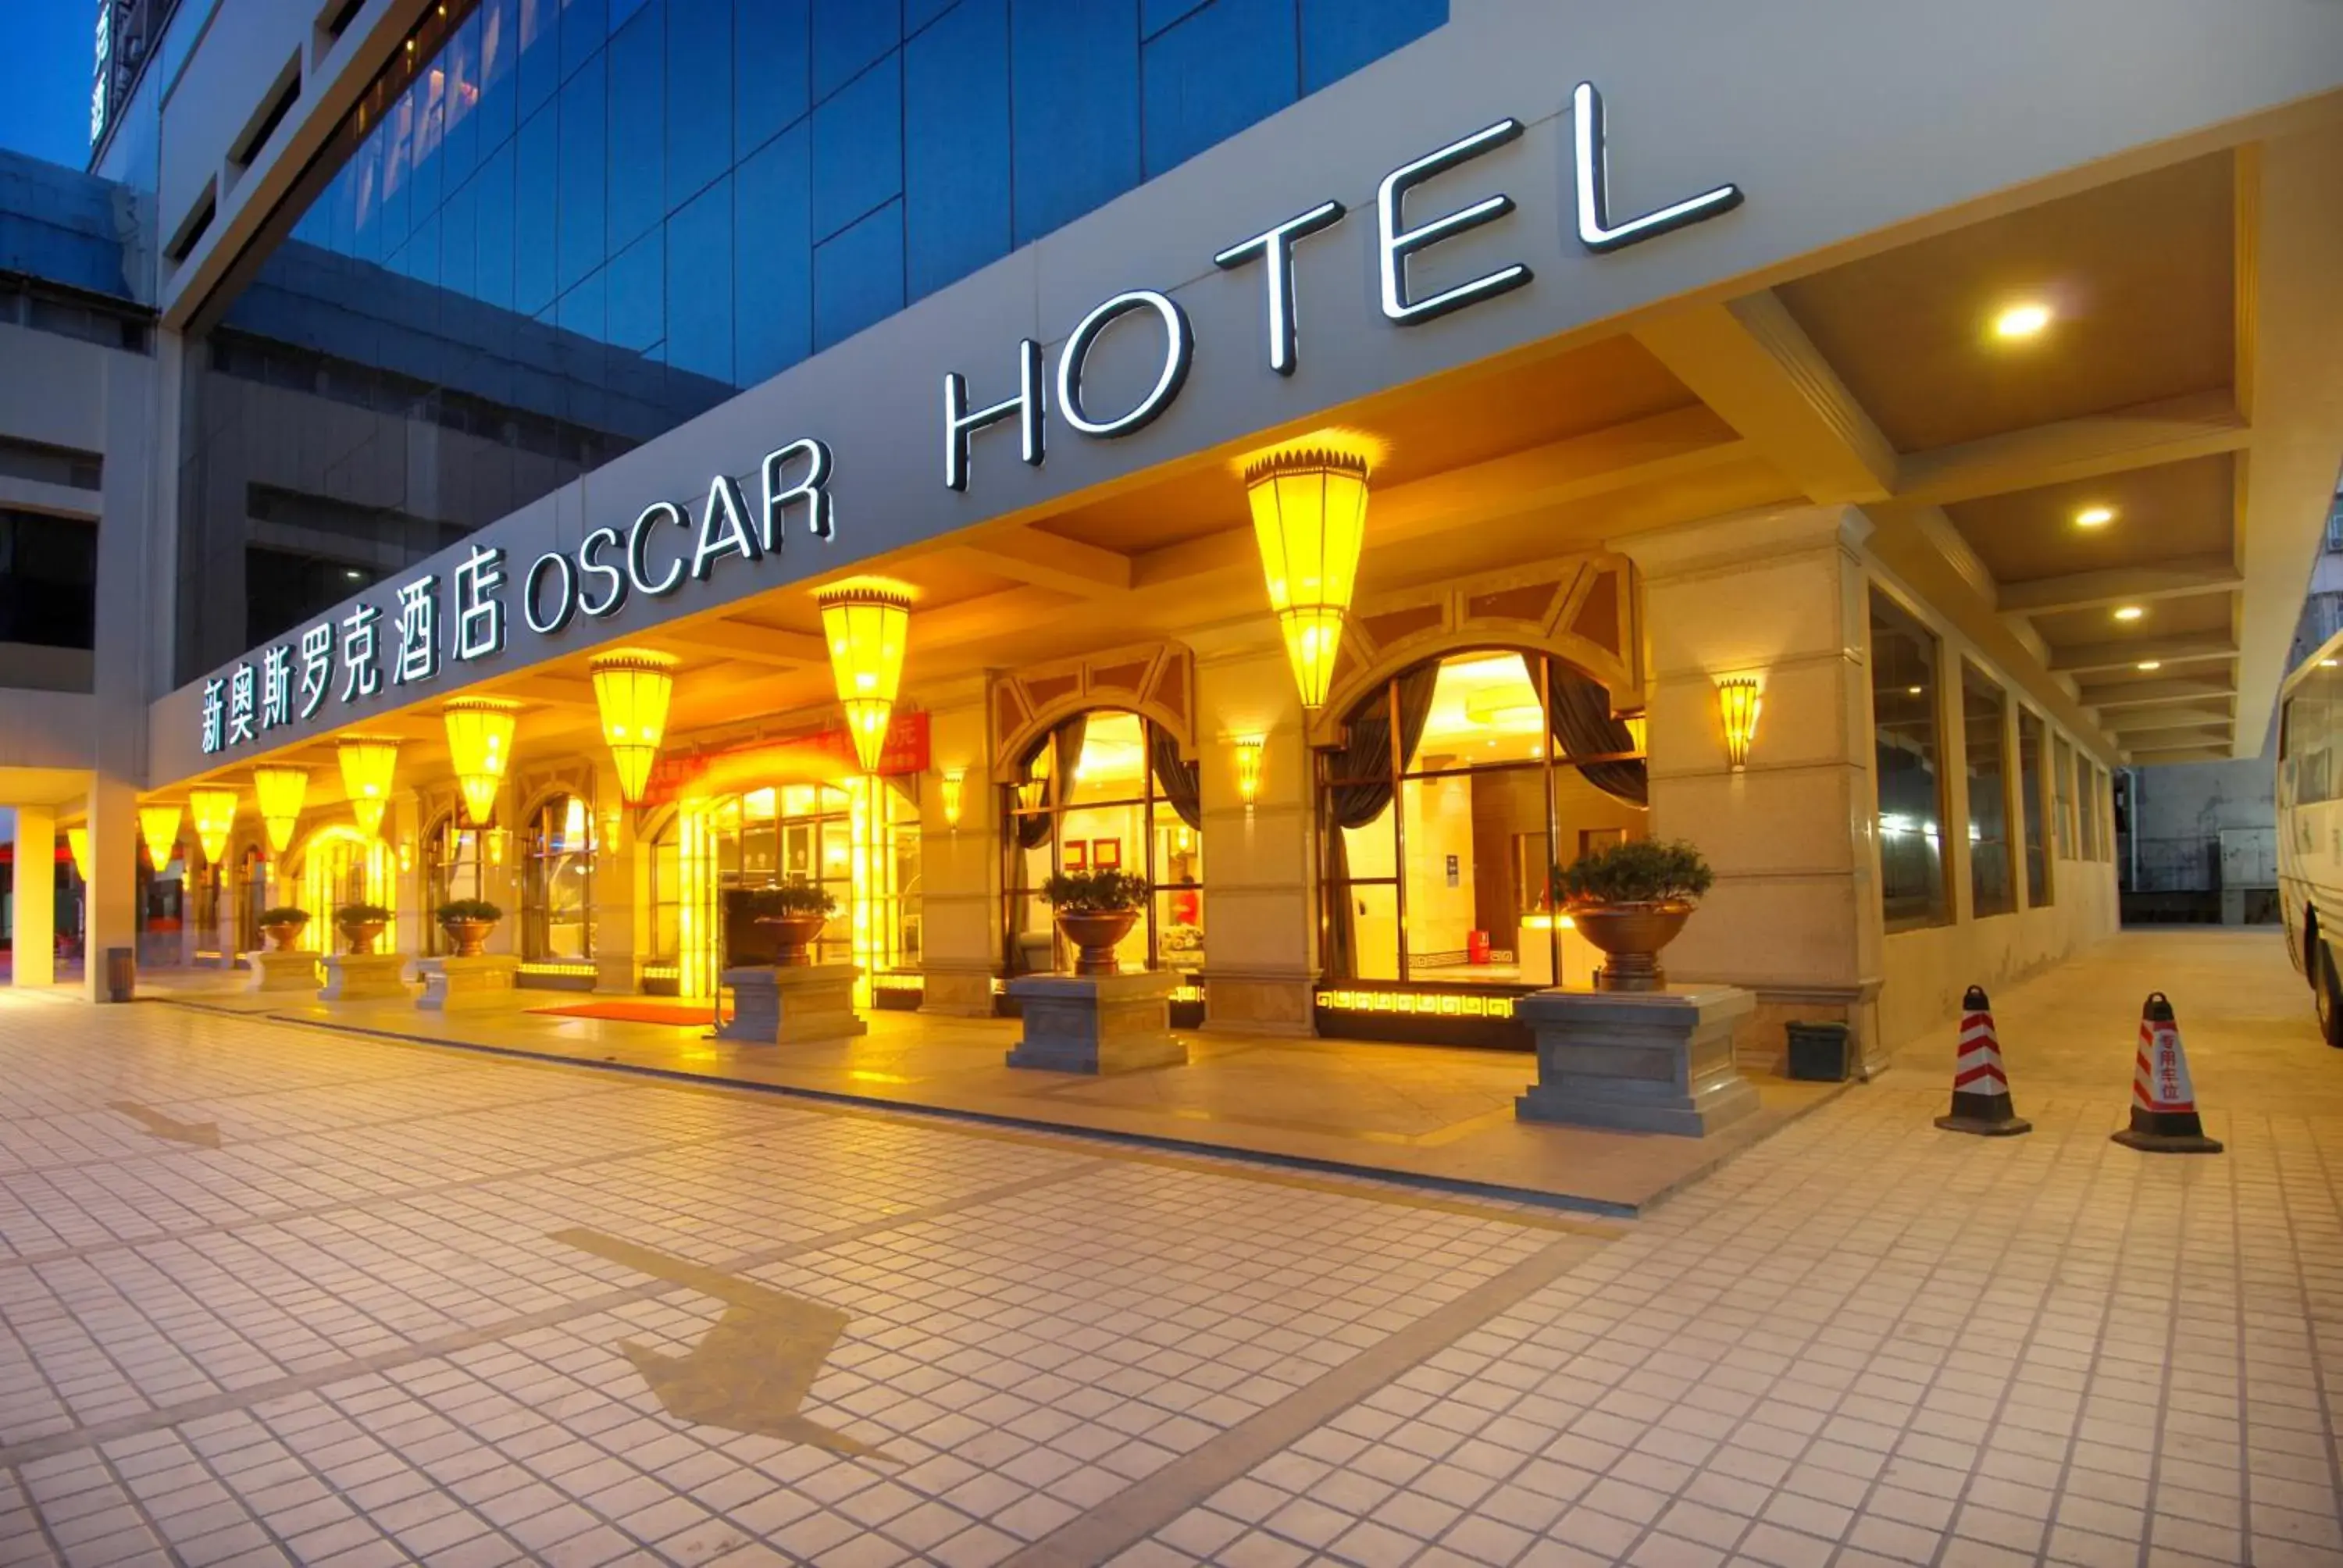 Facade/entrance in Oscar Hotel